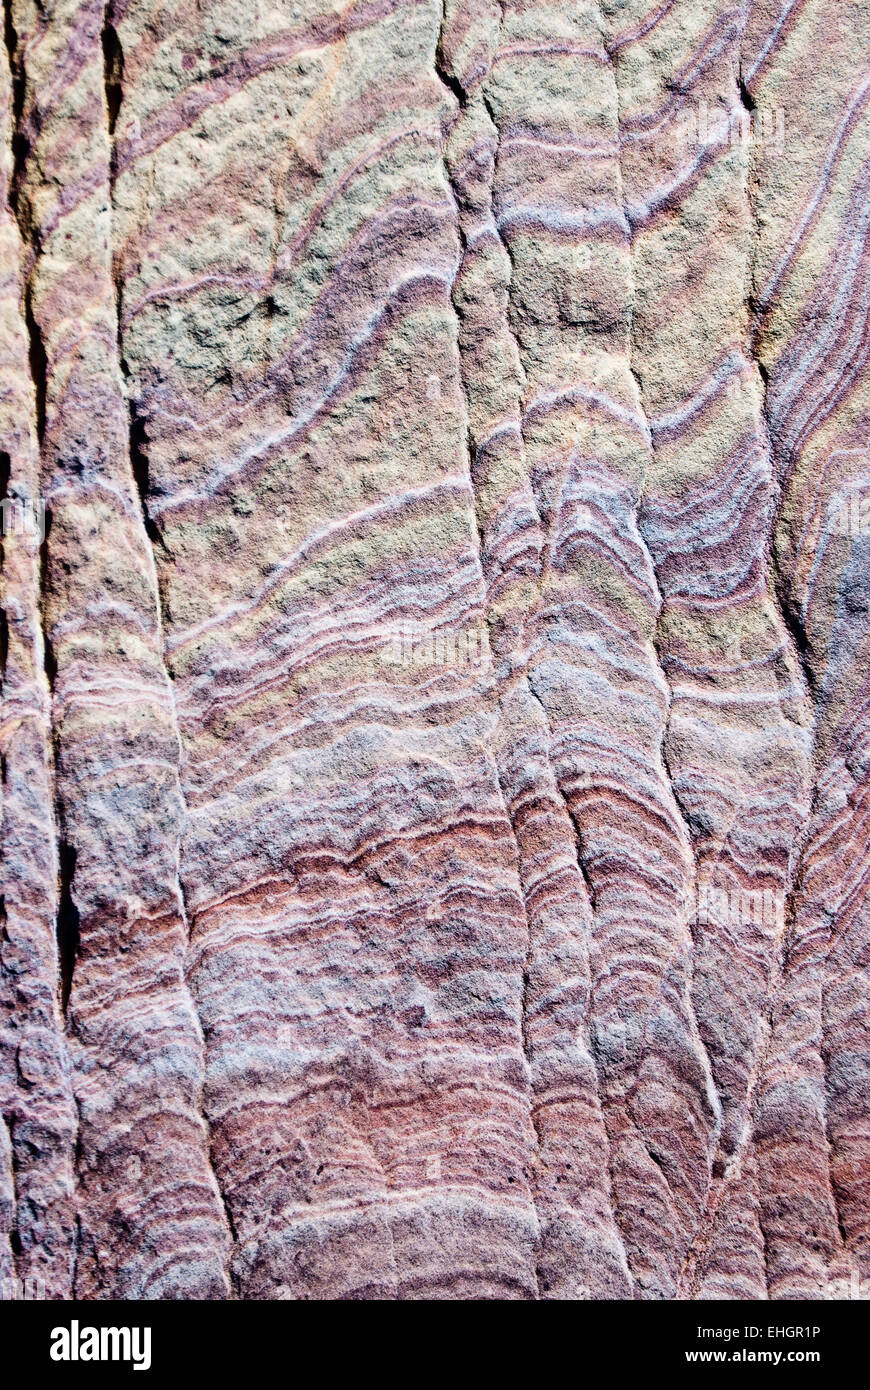 Mur de rochers de grès de couleurs aux tons en tourbillons Banque D'Images